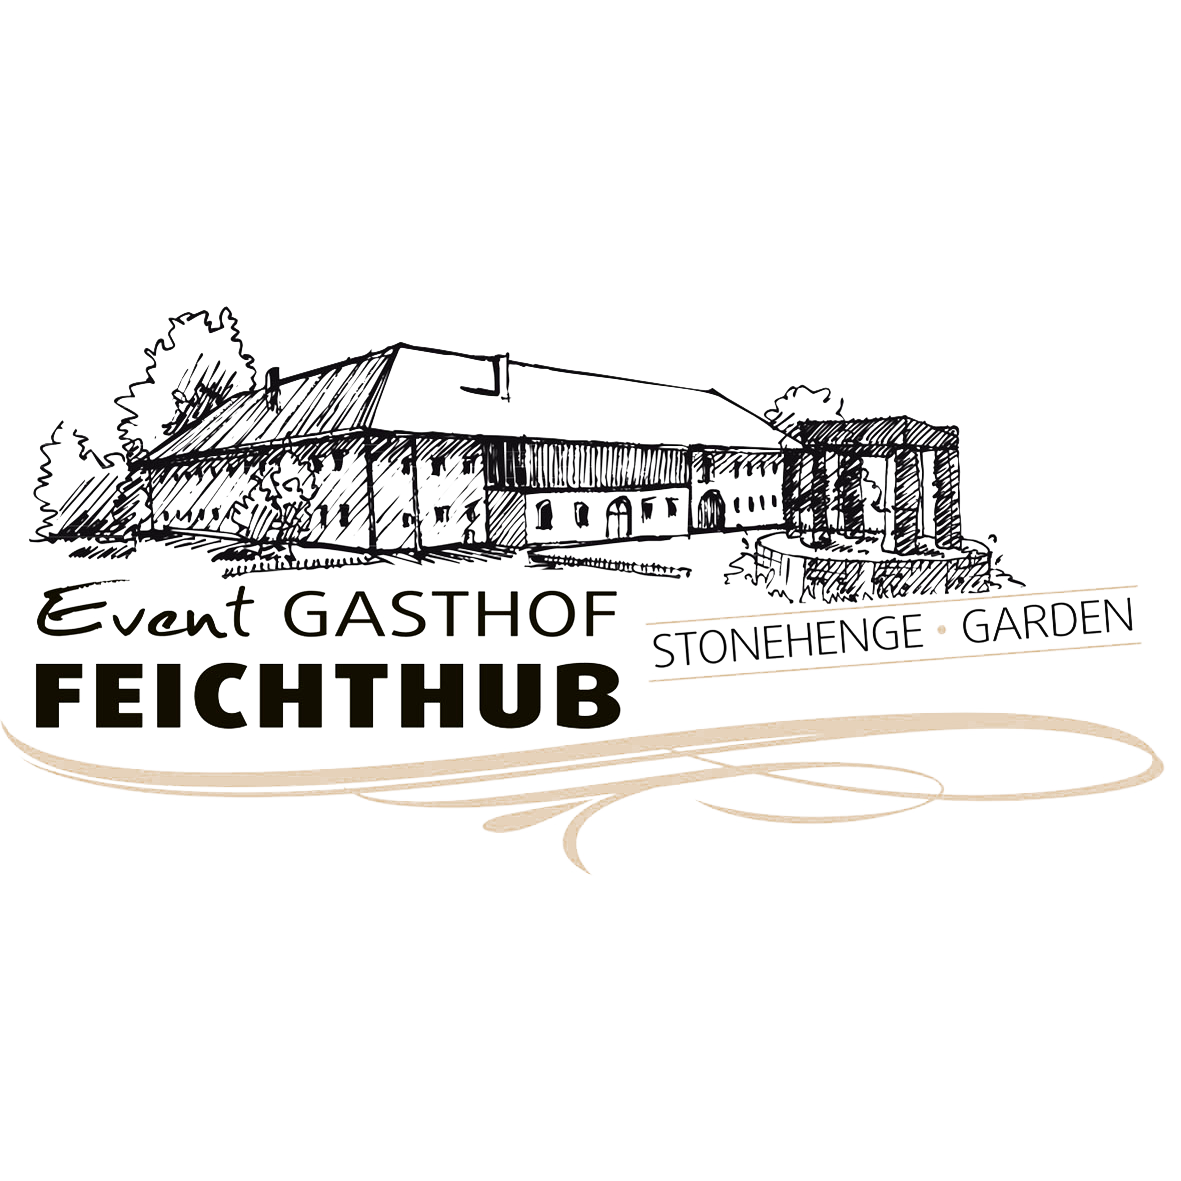 Eventgasthof Feichthub Logo